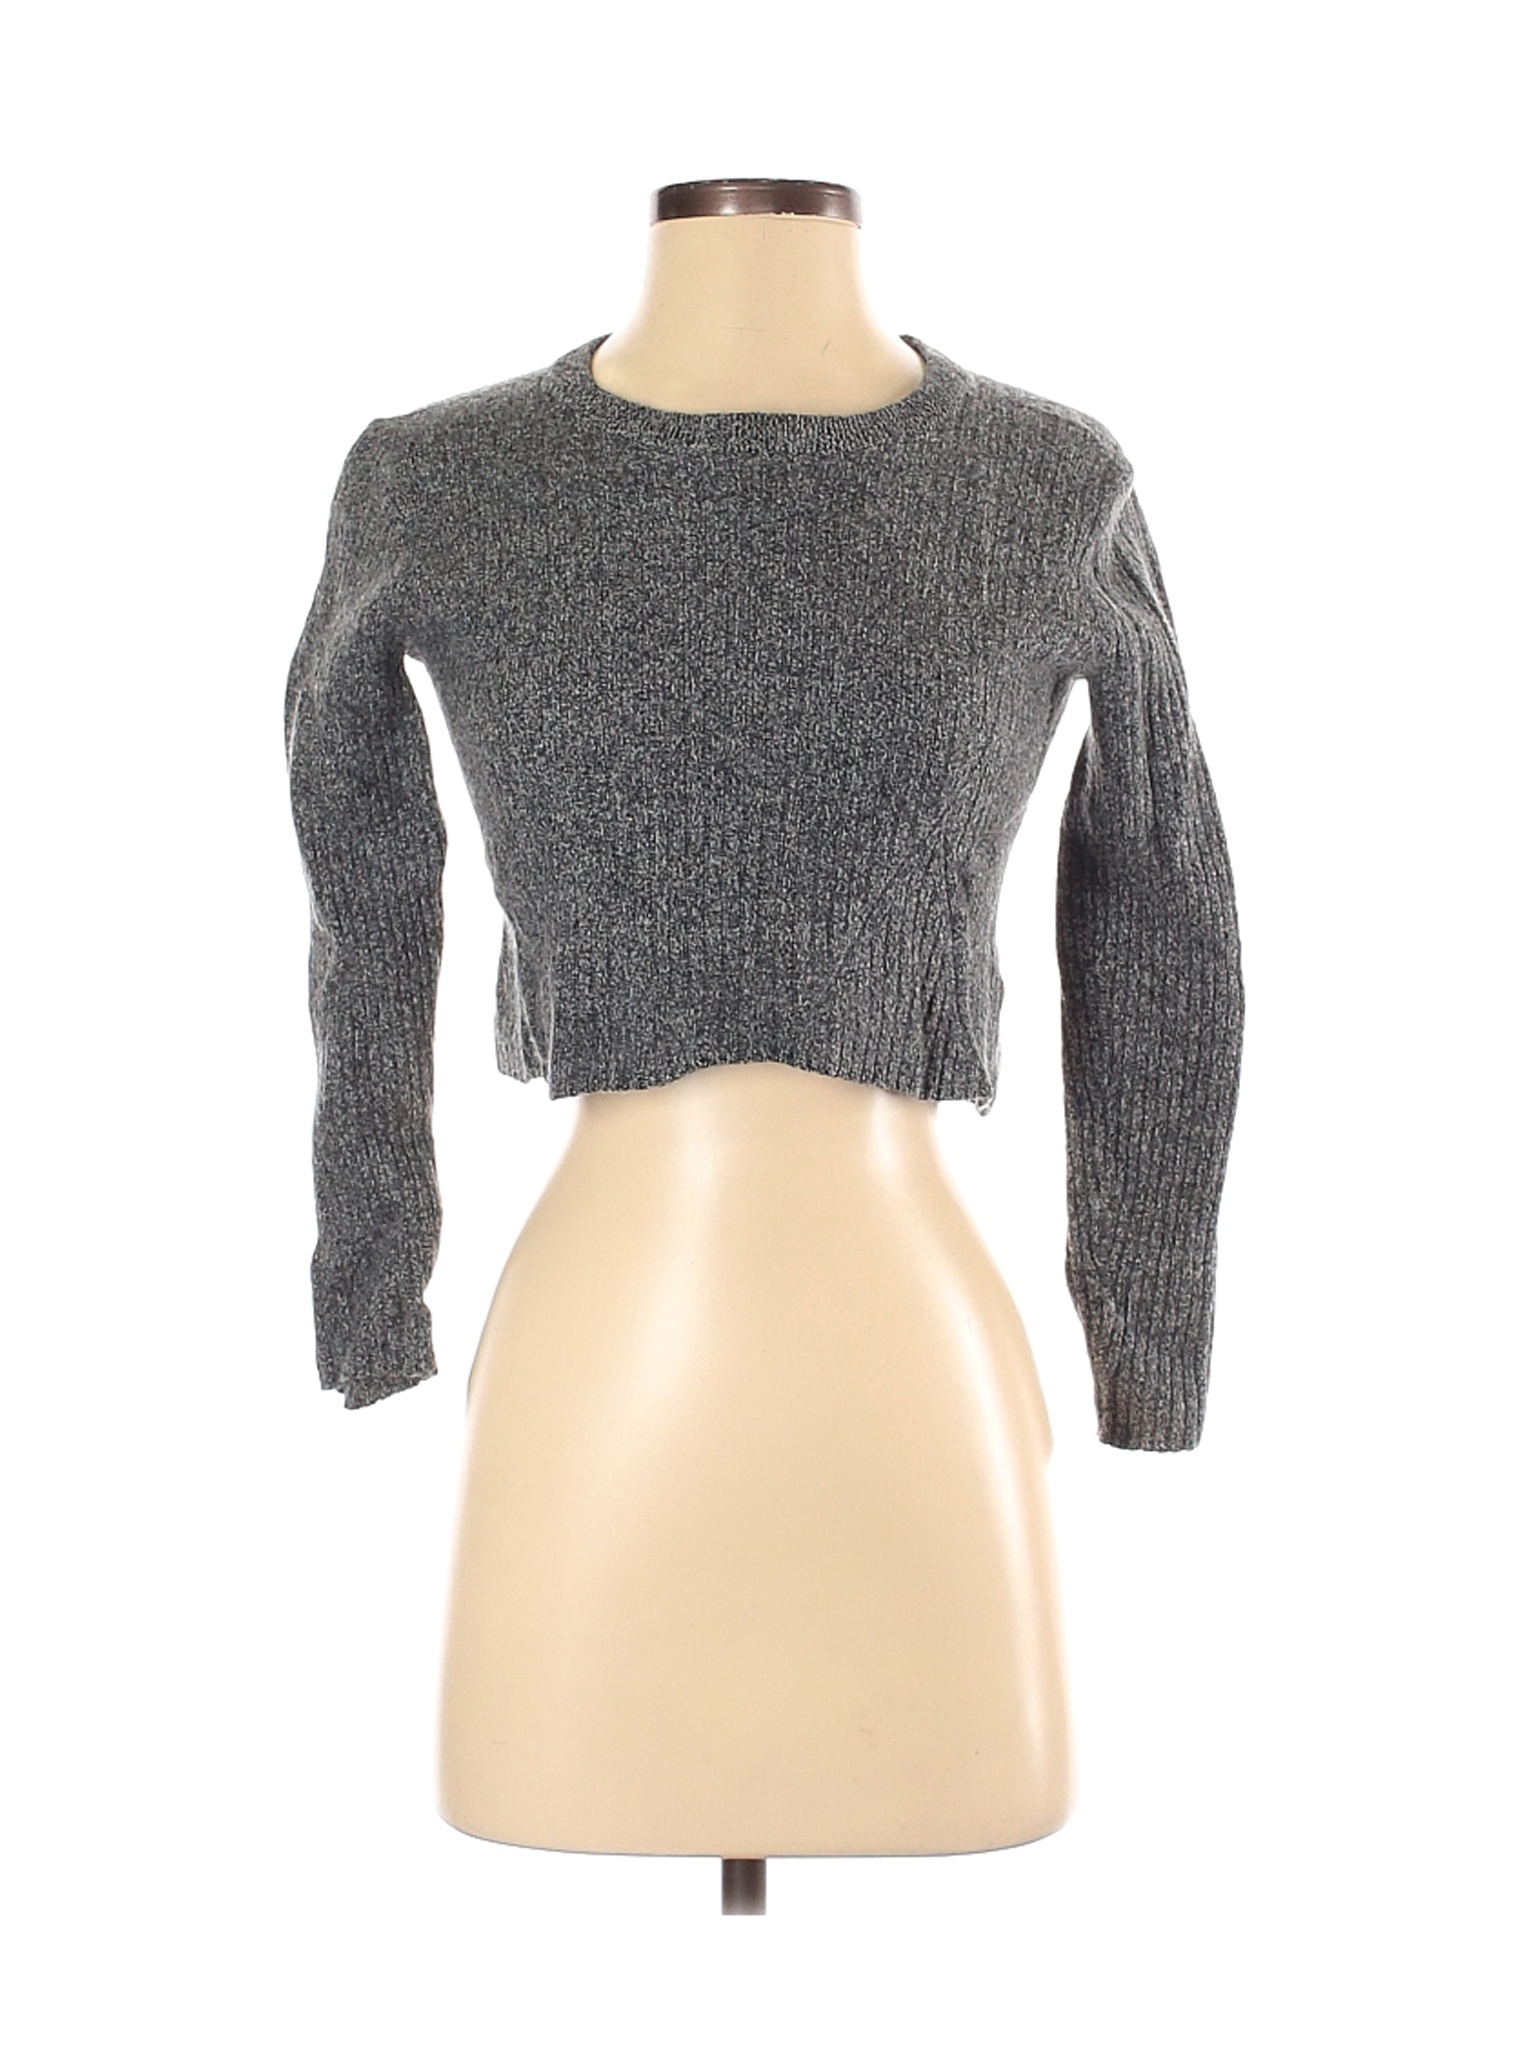 Babaton Women Gray Pullover Sweater XS | eBay